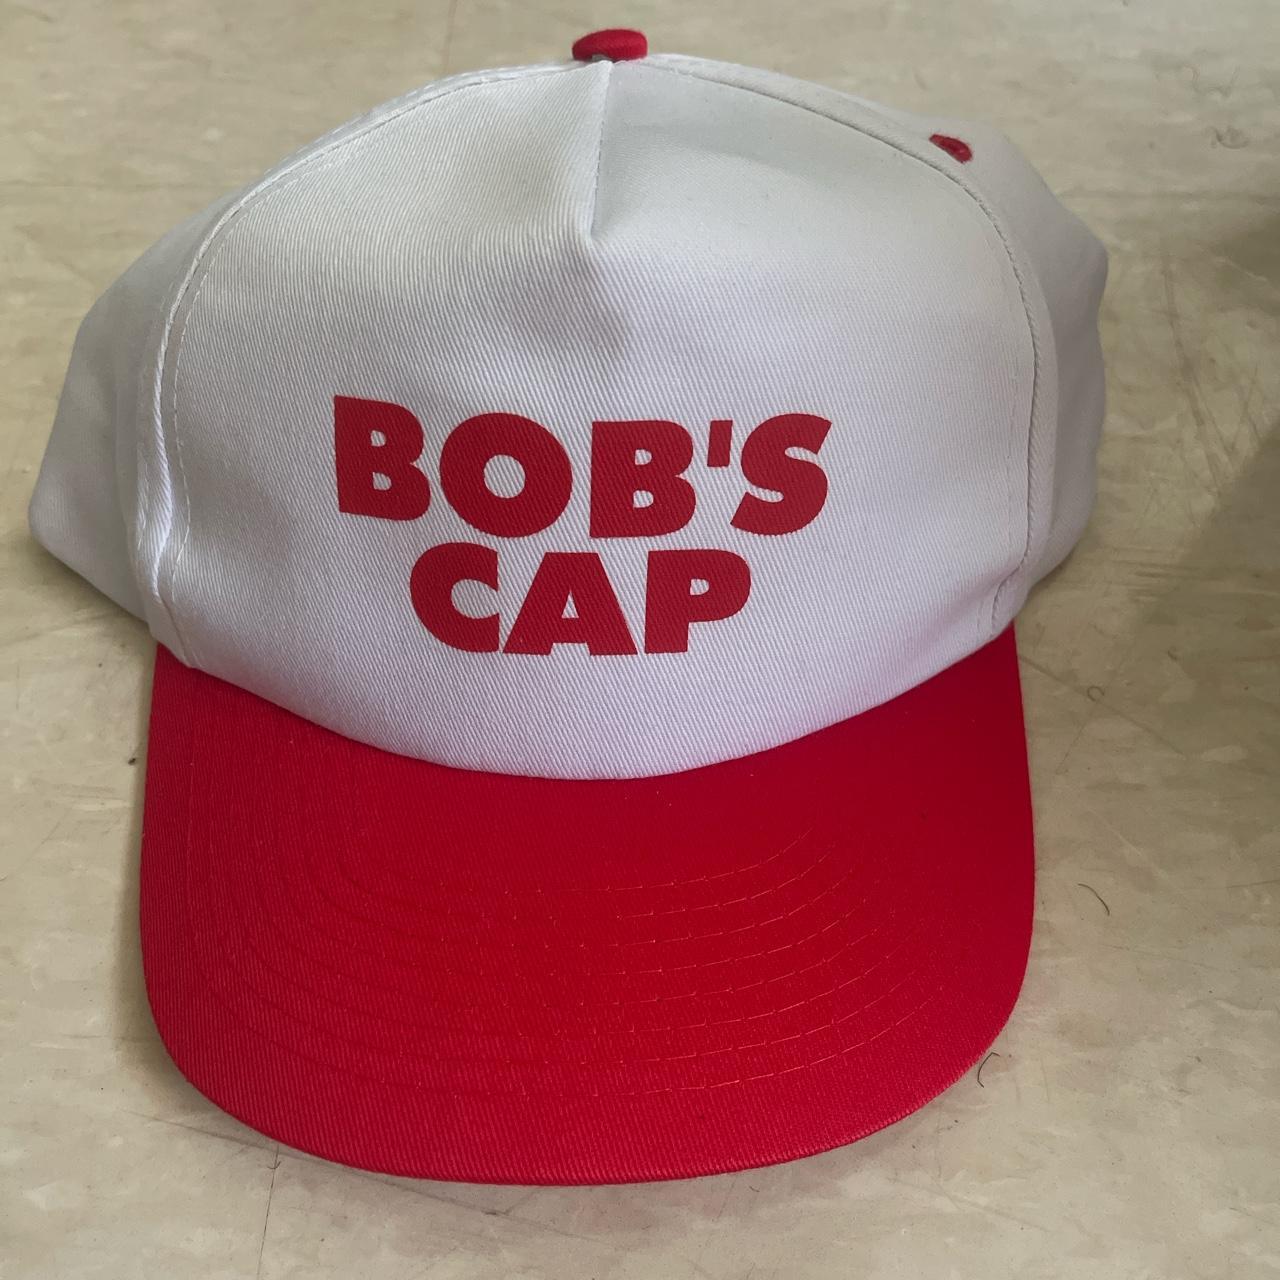 bob’s cap - Depop